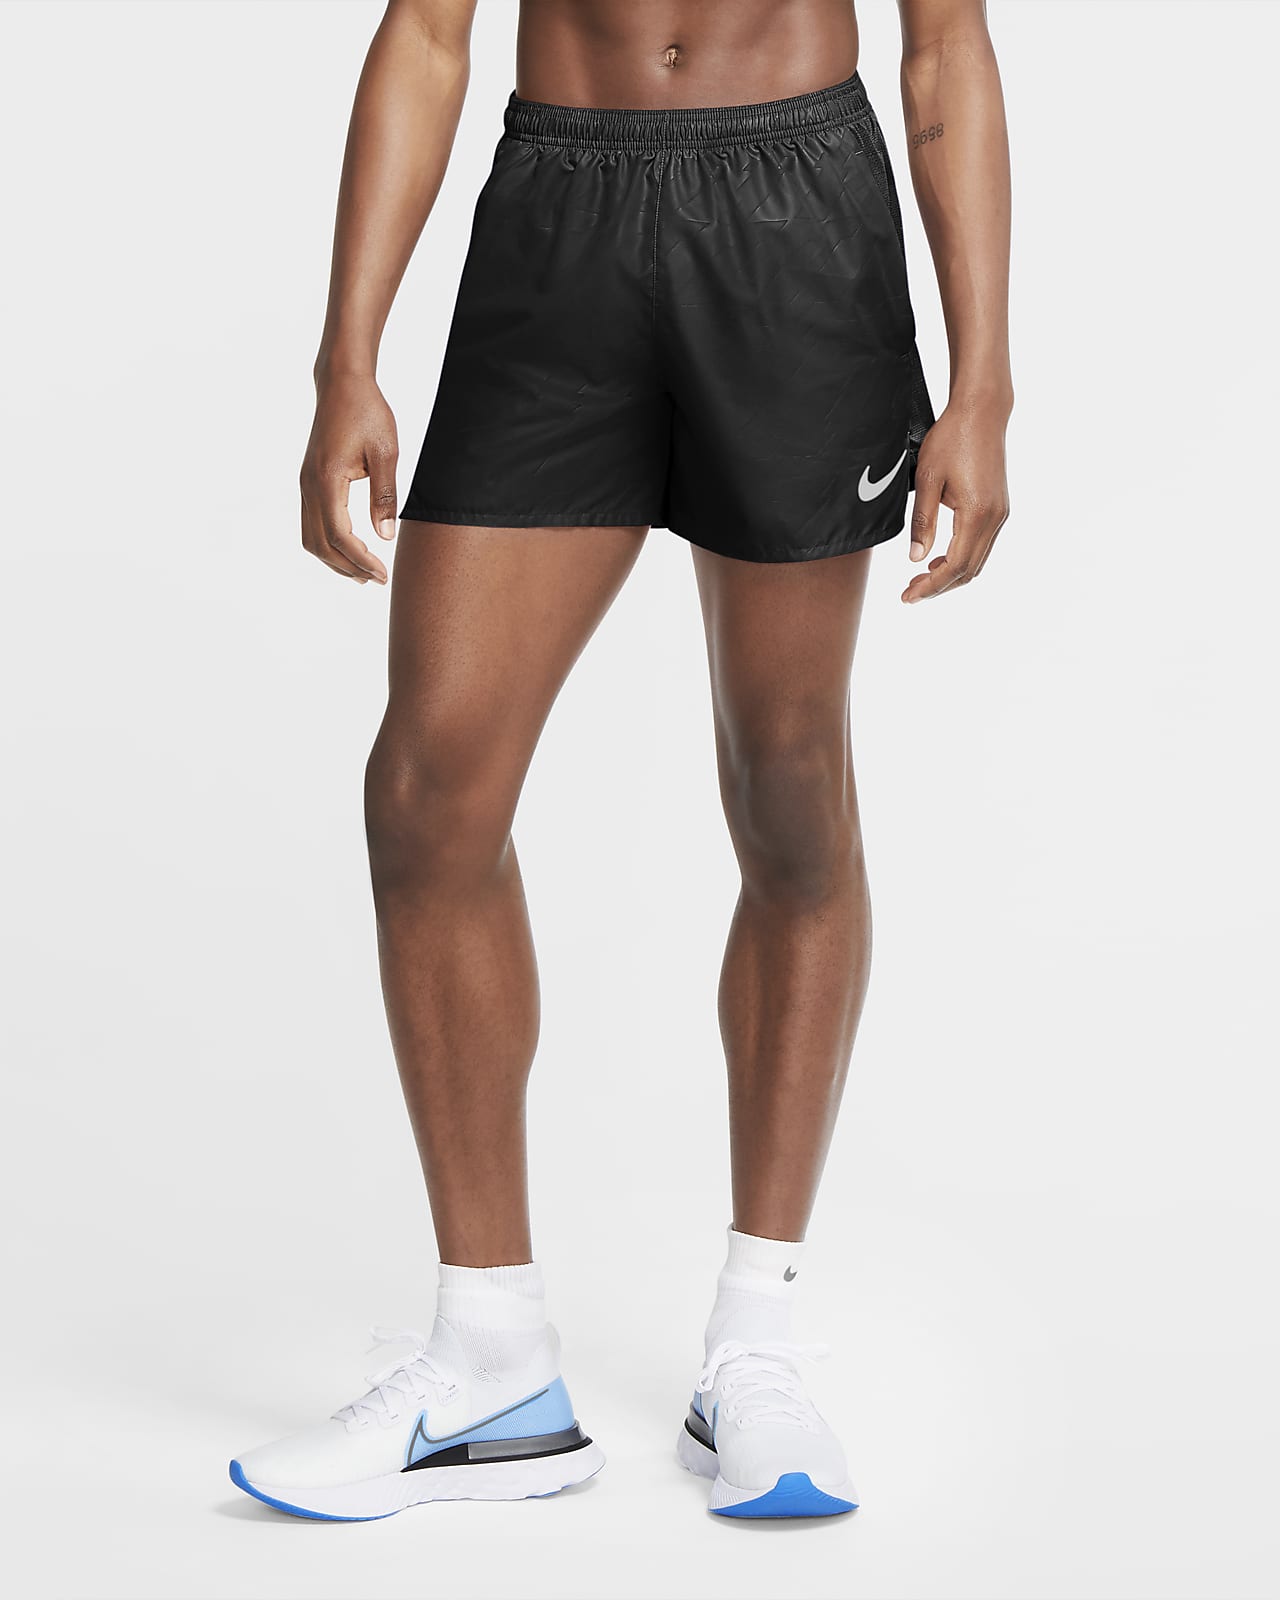 Shorts de running estampados para hombre Nike Challenger Future Fast. Nike .com